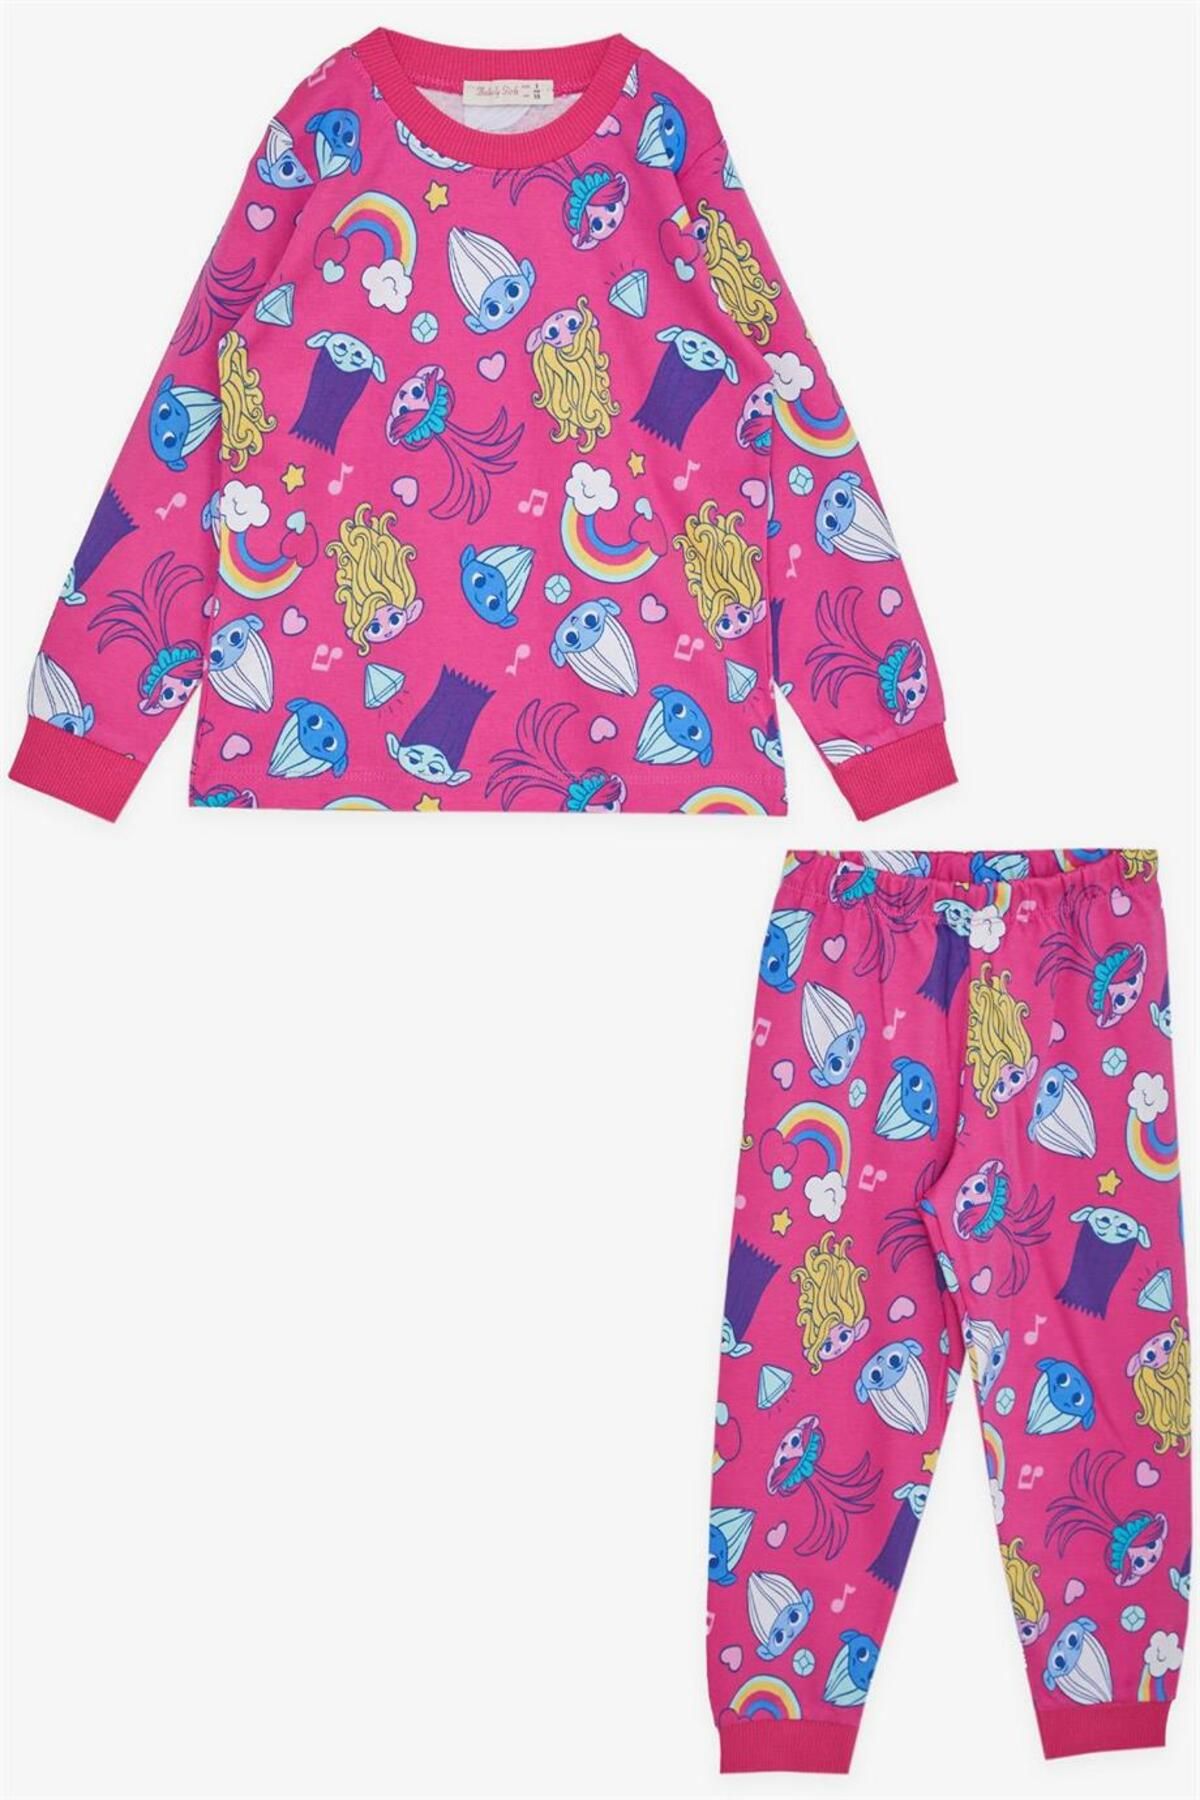 babely gırls BREEZE Kız Çocuk Pijama Takımı Şirinler Desenli 1-4 Yaş, Fuşya